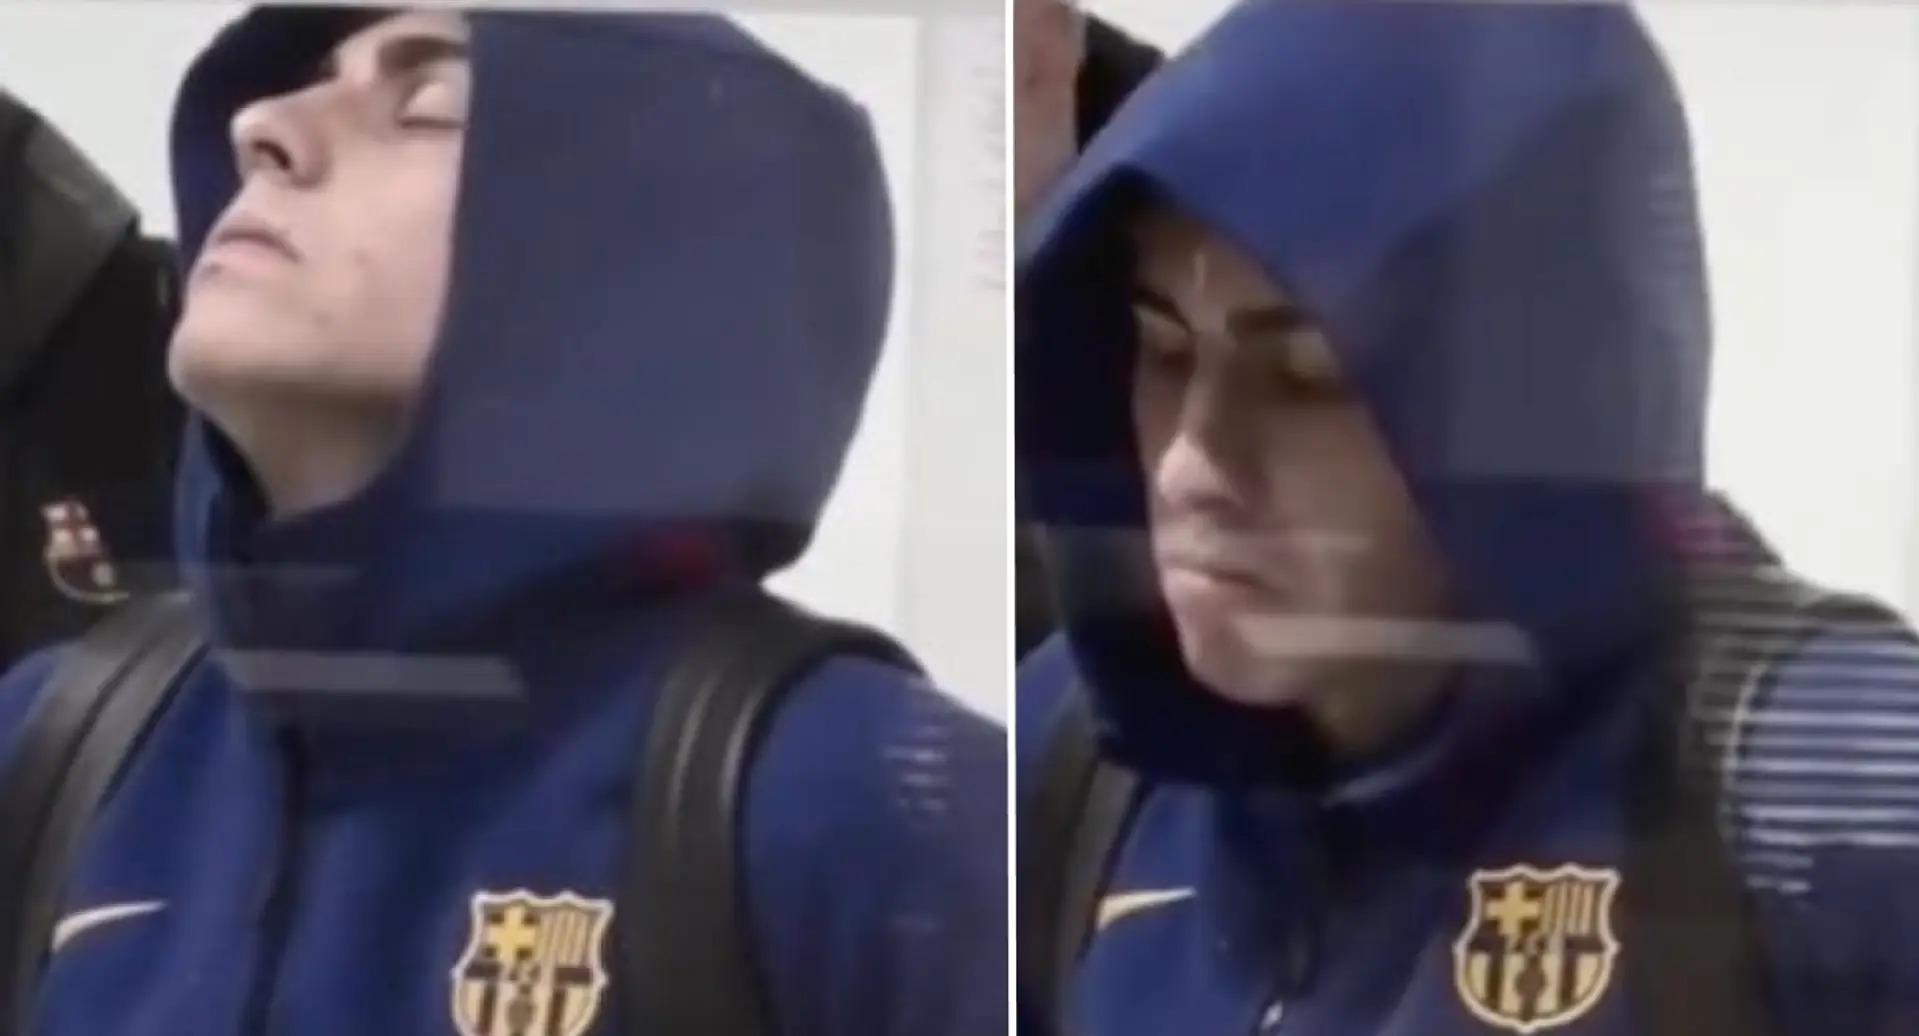 La mirada devastada de Fermín López tras el empate en Bilbao captada por la cámara